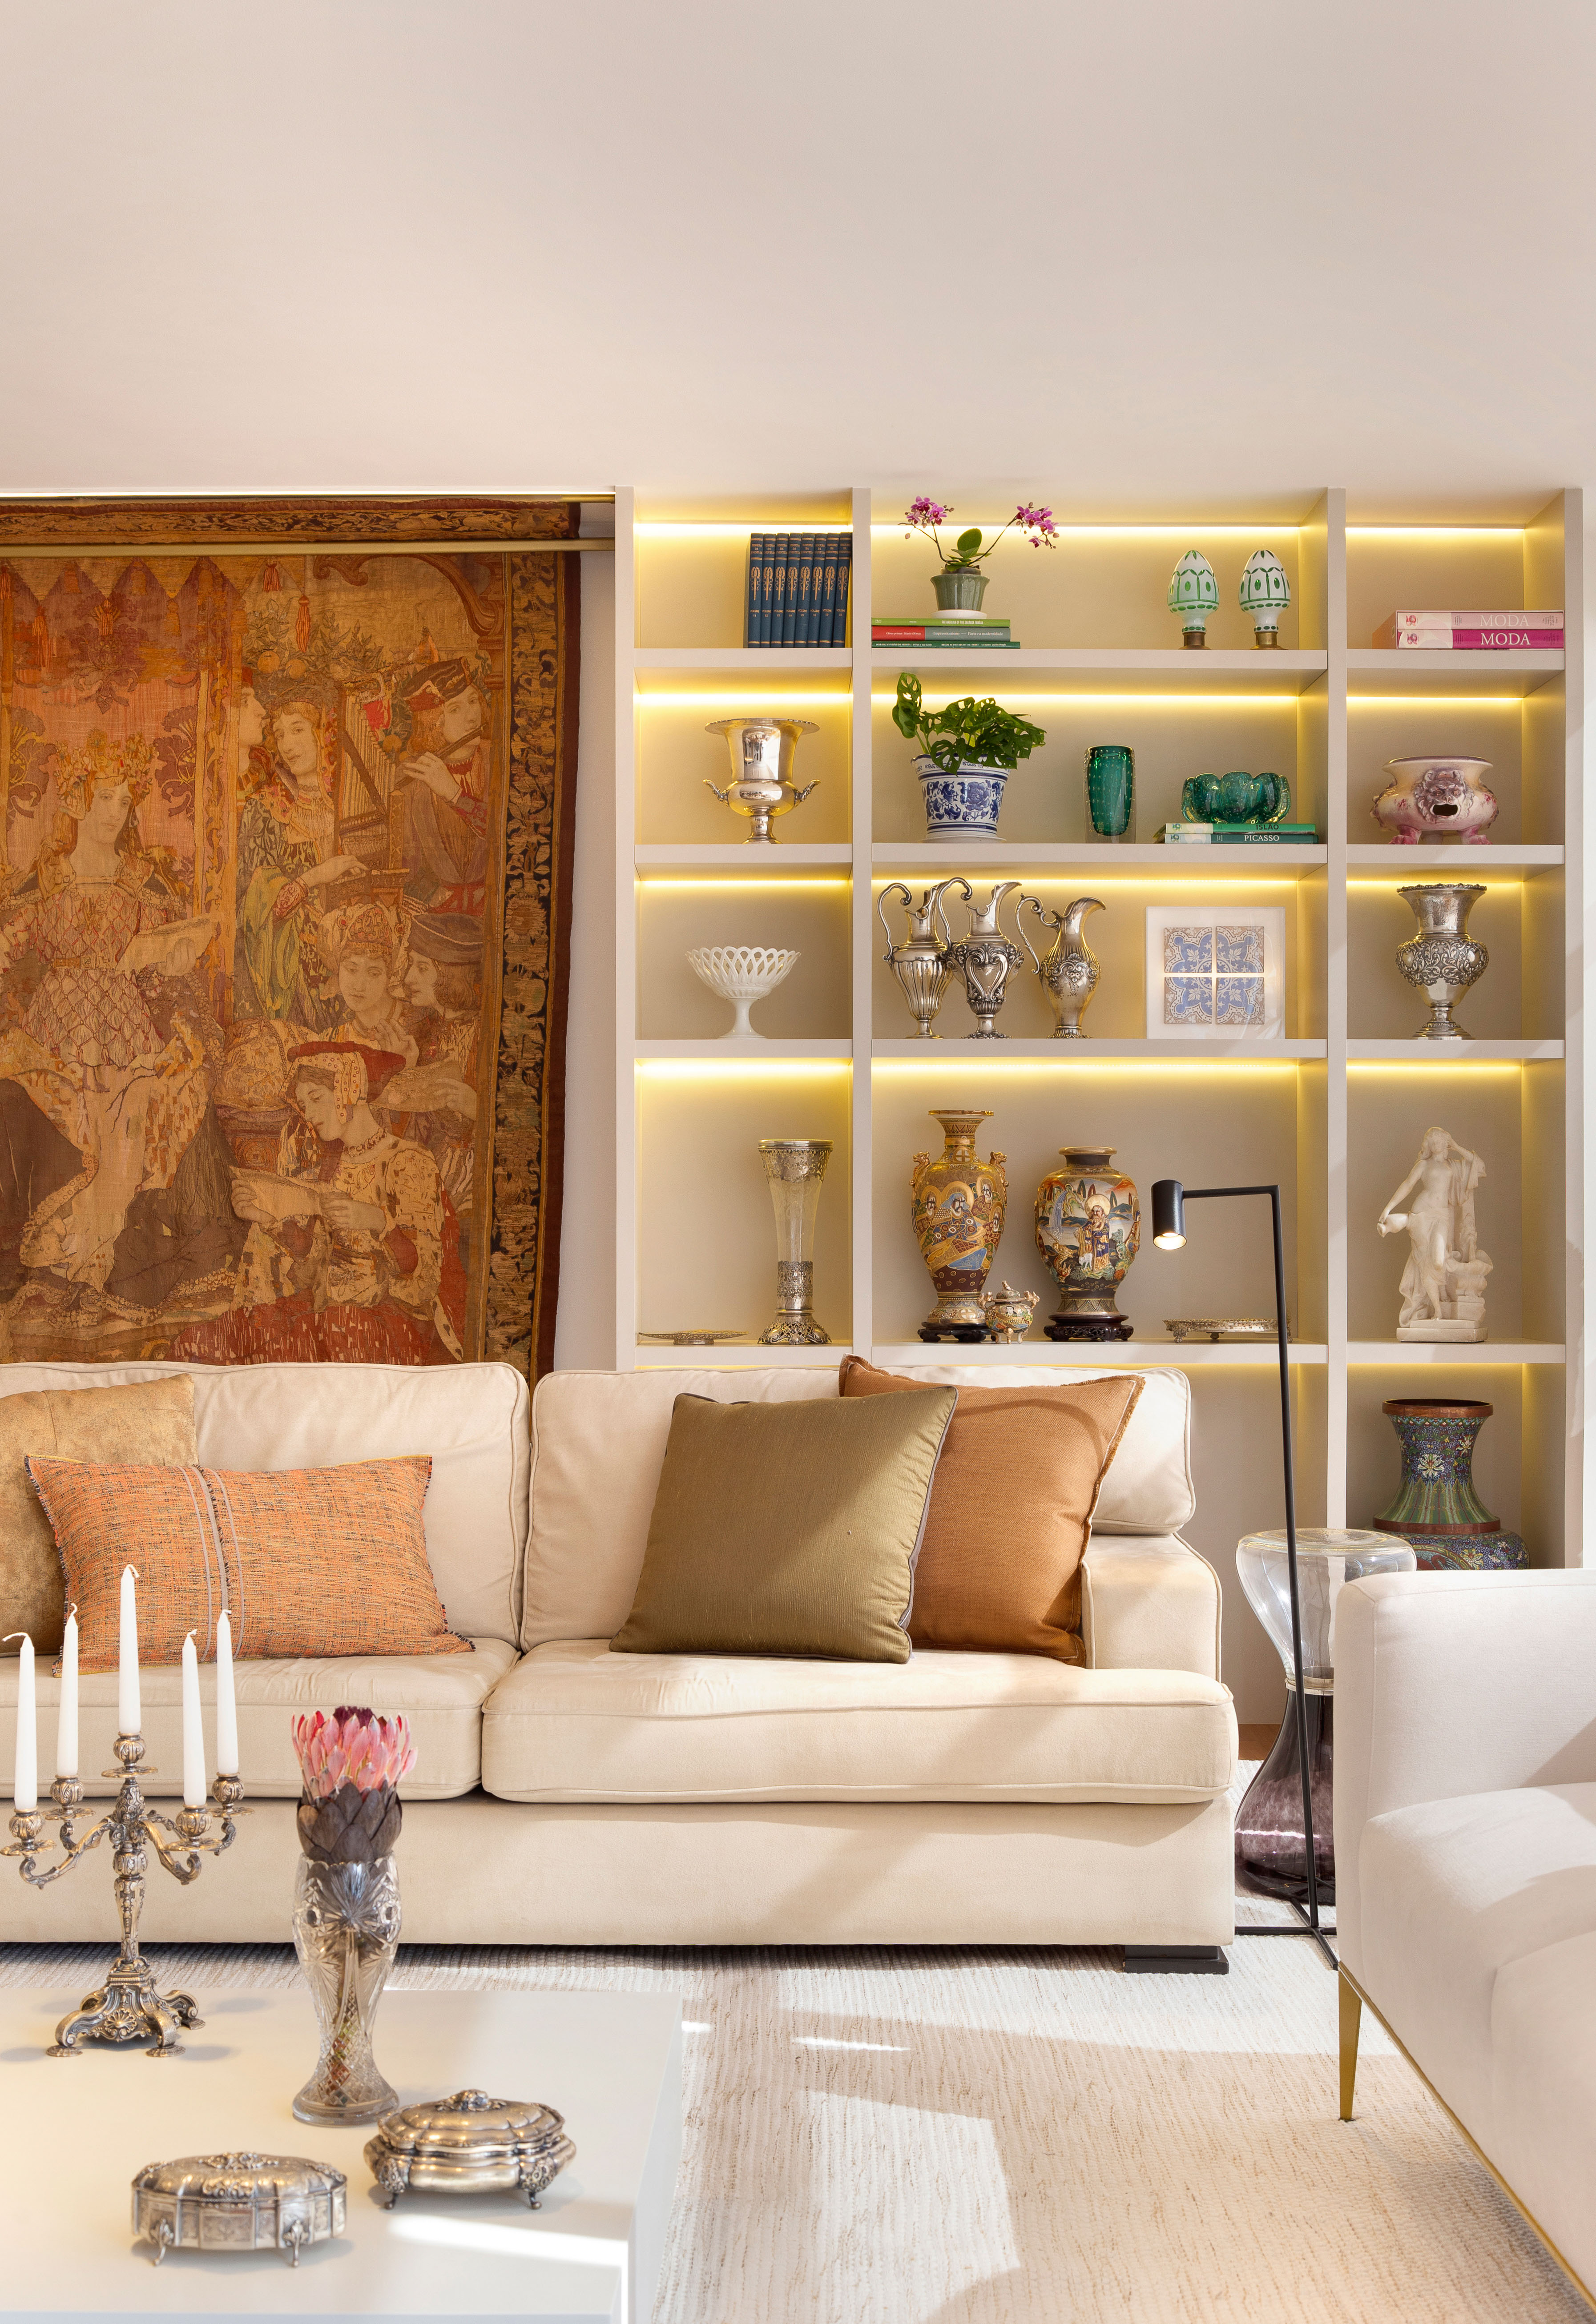 Projeto de Ricardo Melo e Rodrigo Passos. Na foto, sala de estar com sofá branco, tapete e estante de nichos iluminados.